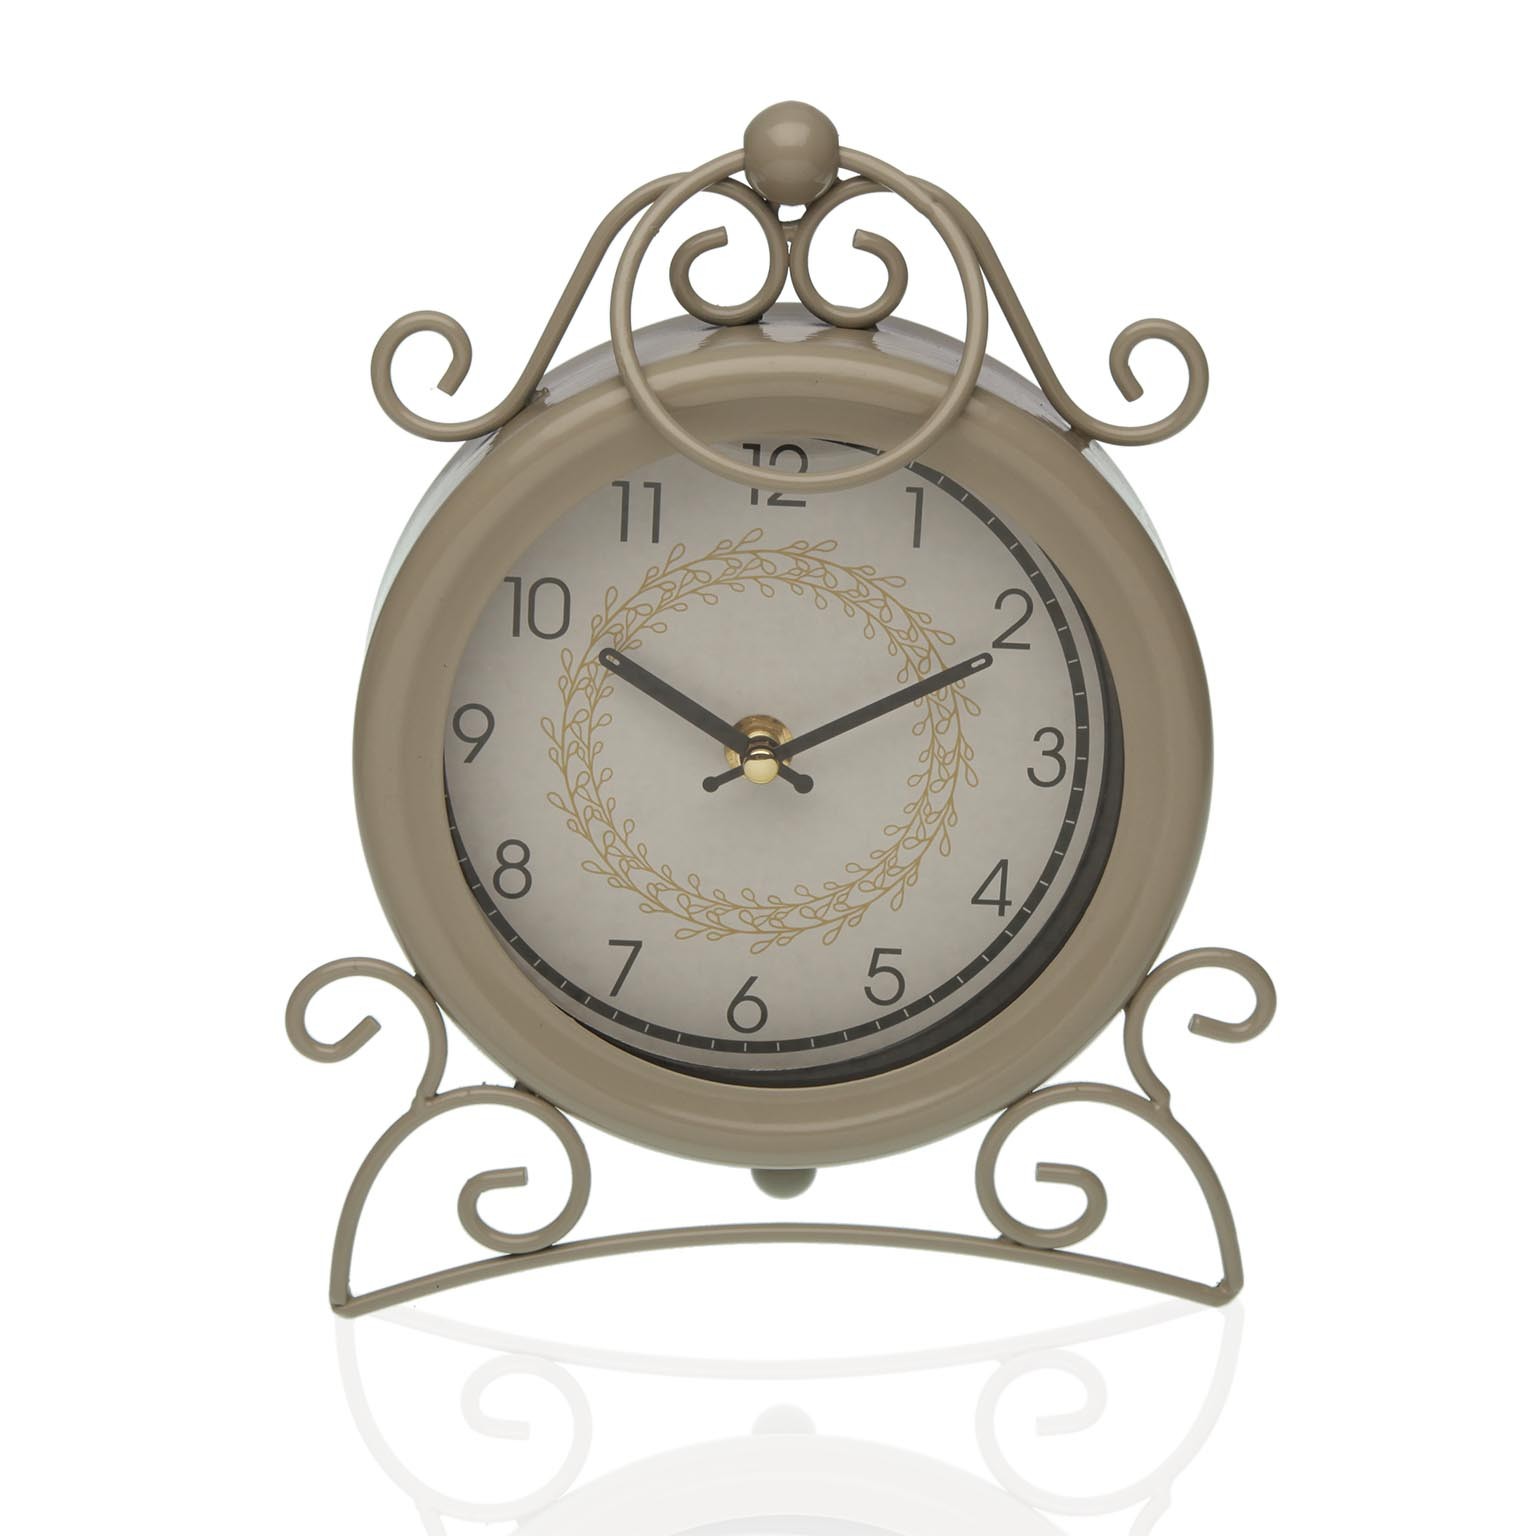 Стенен часовник Versa Corduroy Дървен (4 x 29 x 29 cm)